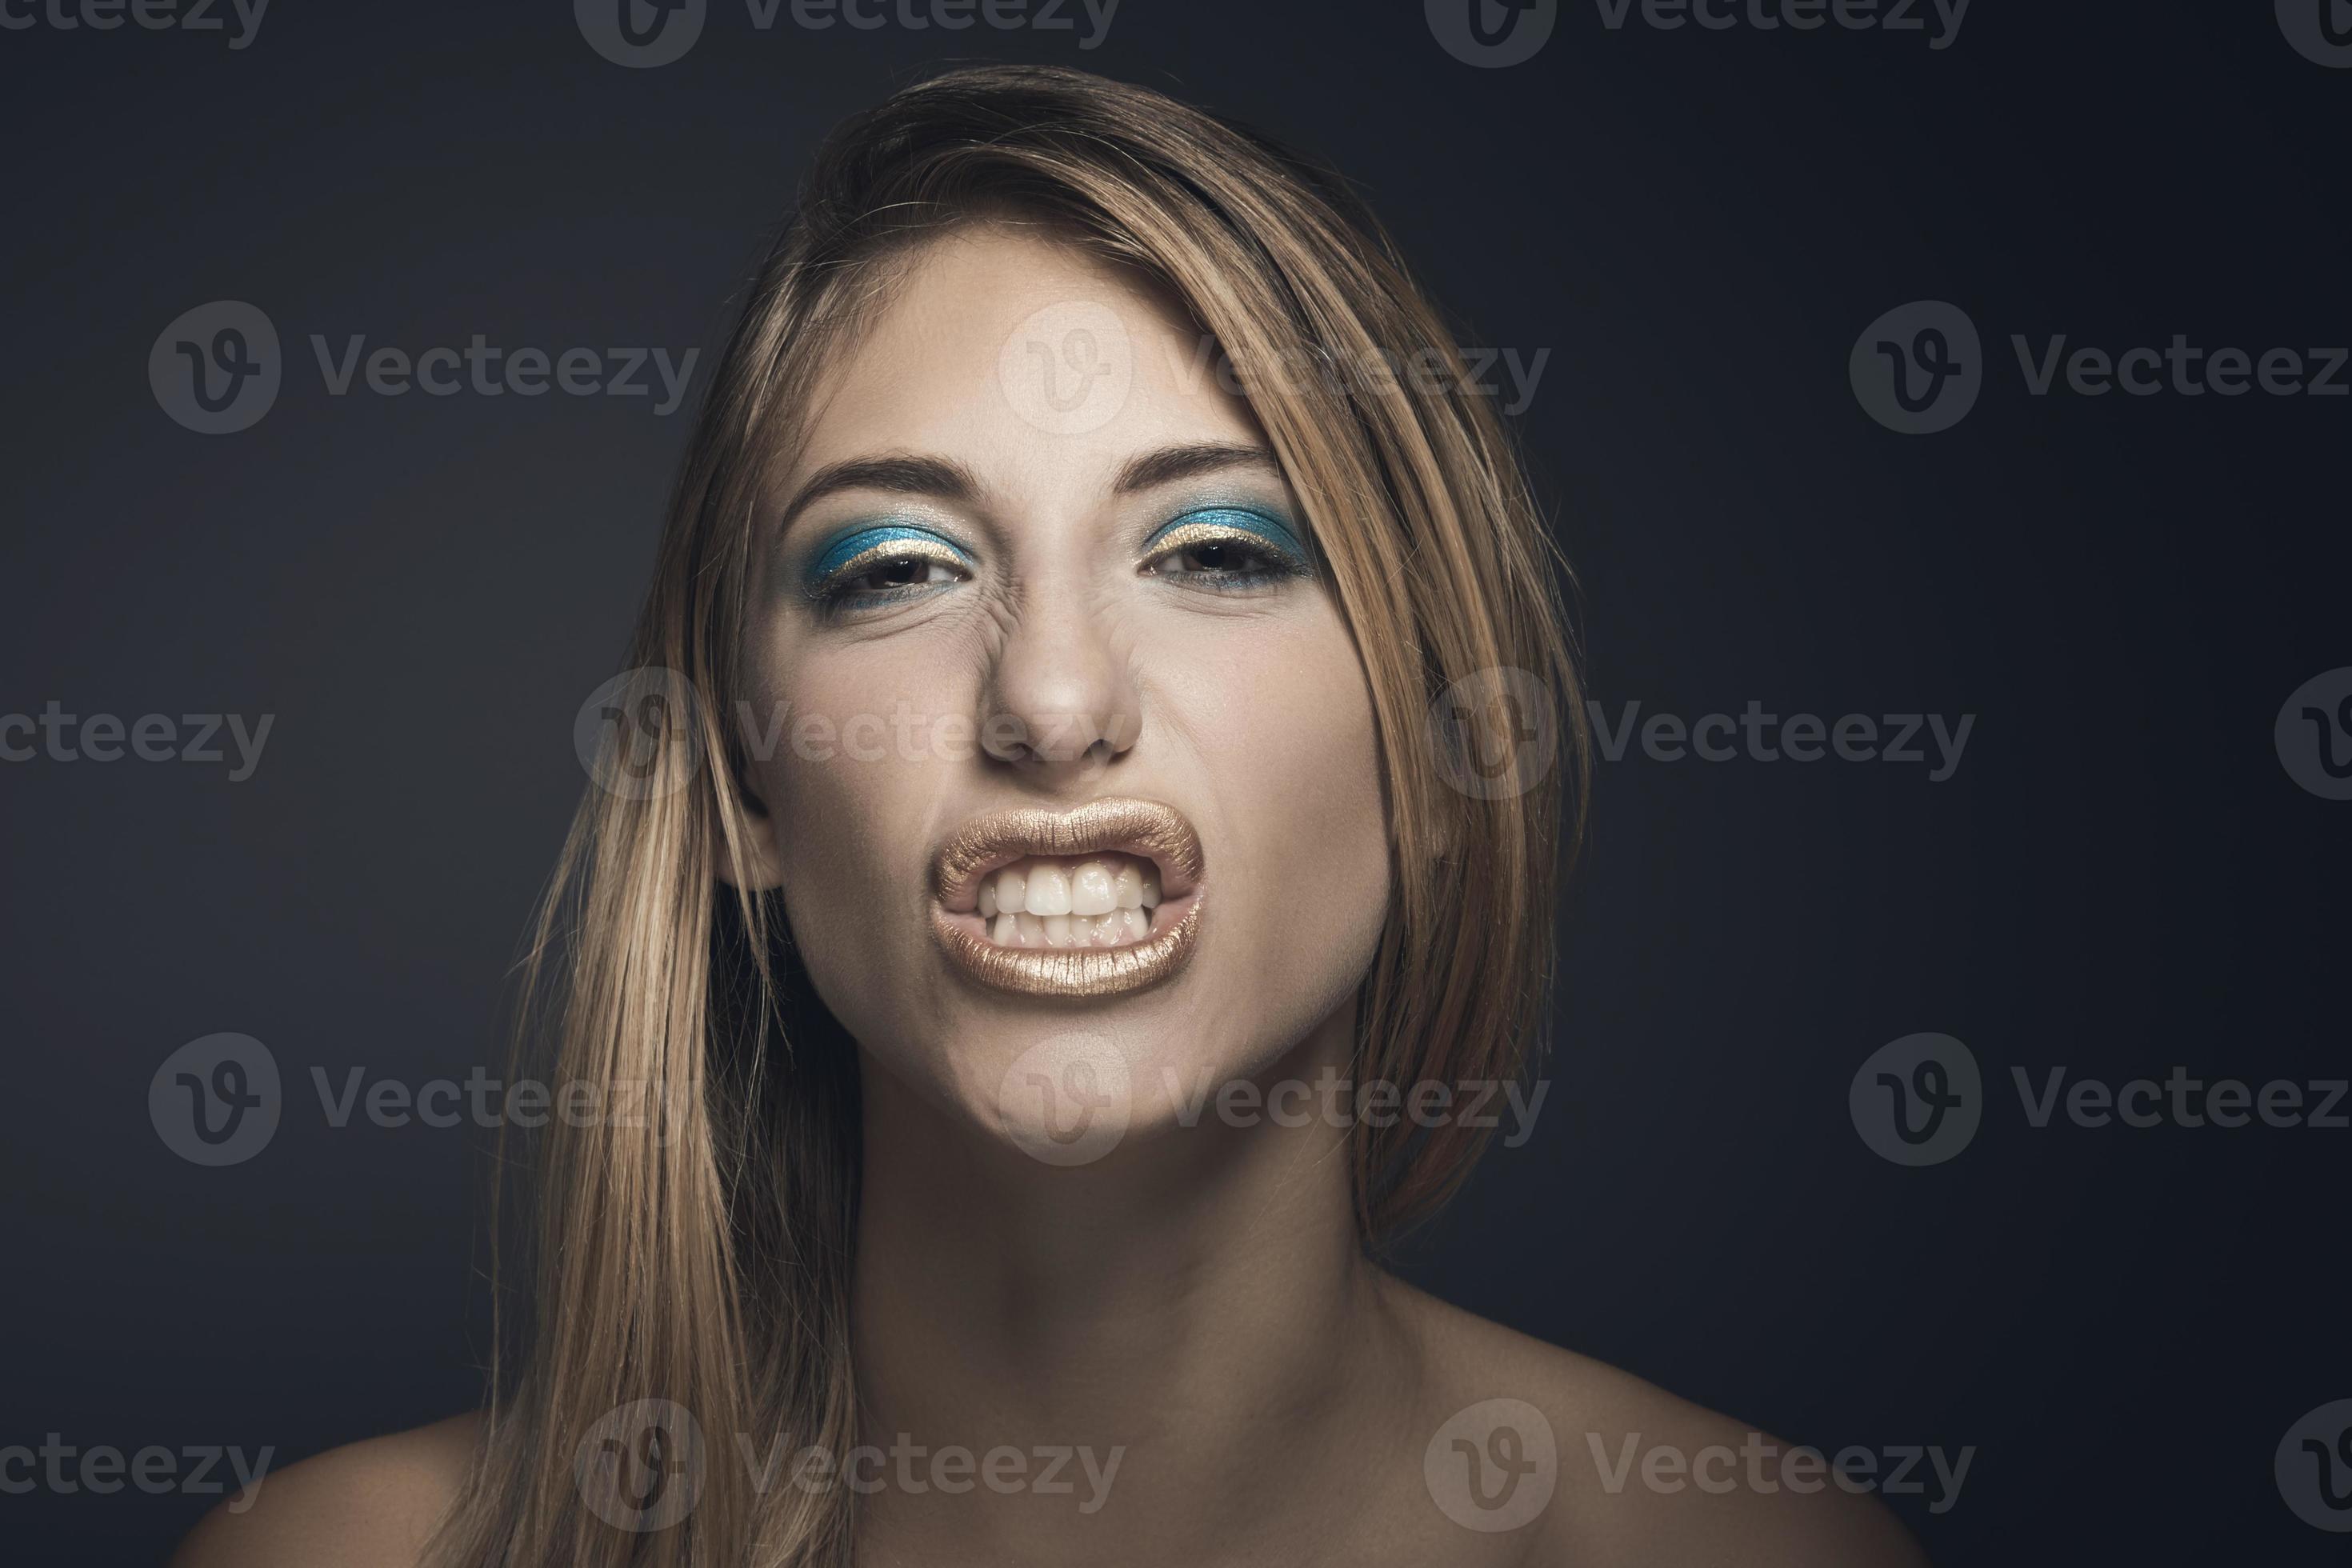 Retrato de belleza de una joven mujer sexy sobre un fondo azul oscuro foto